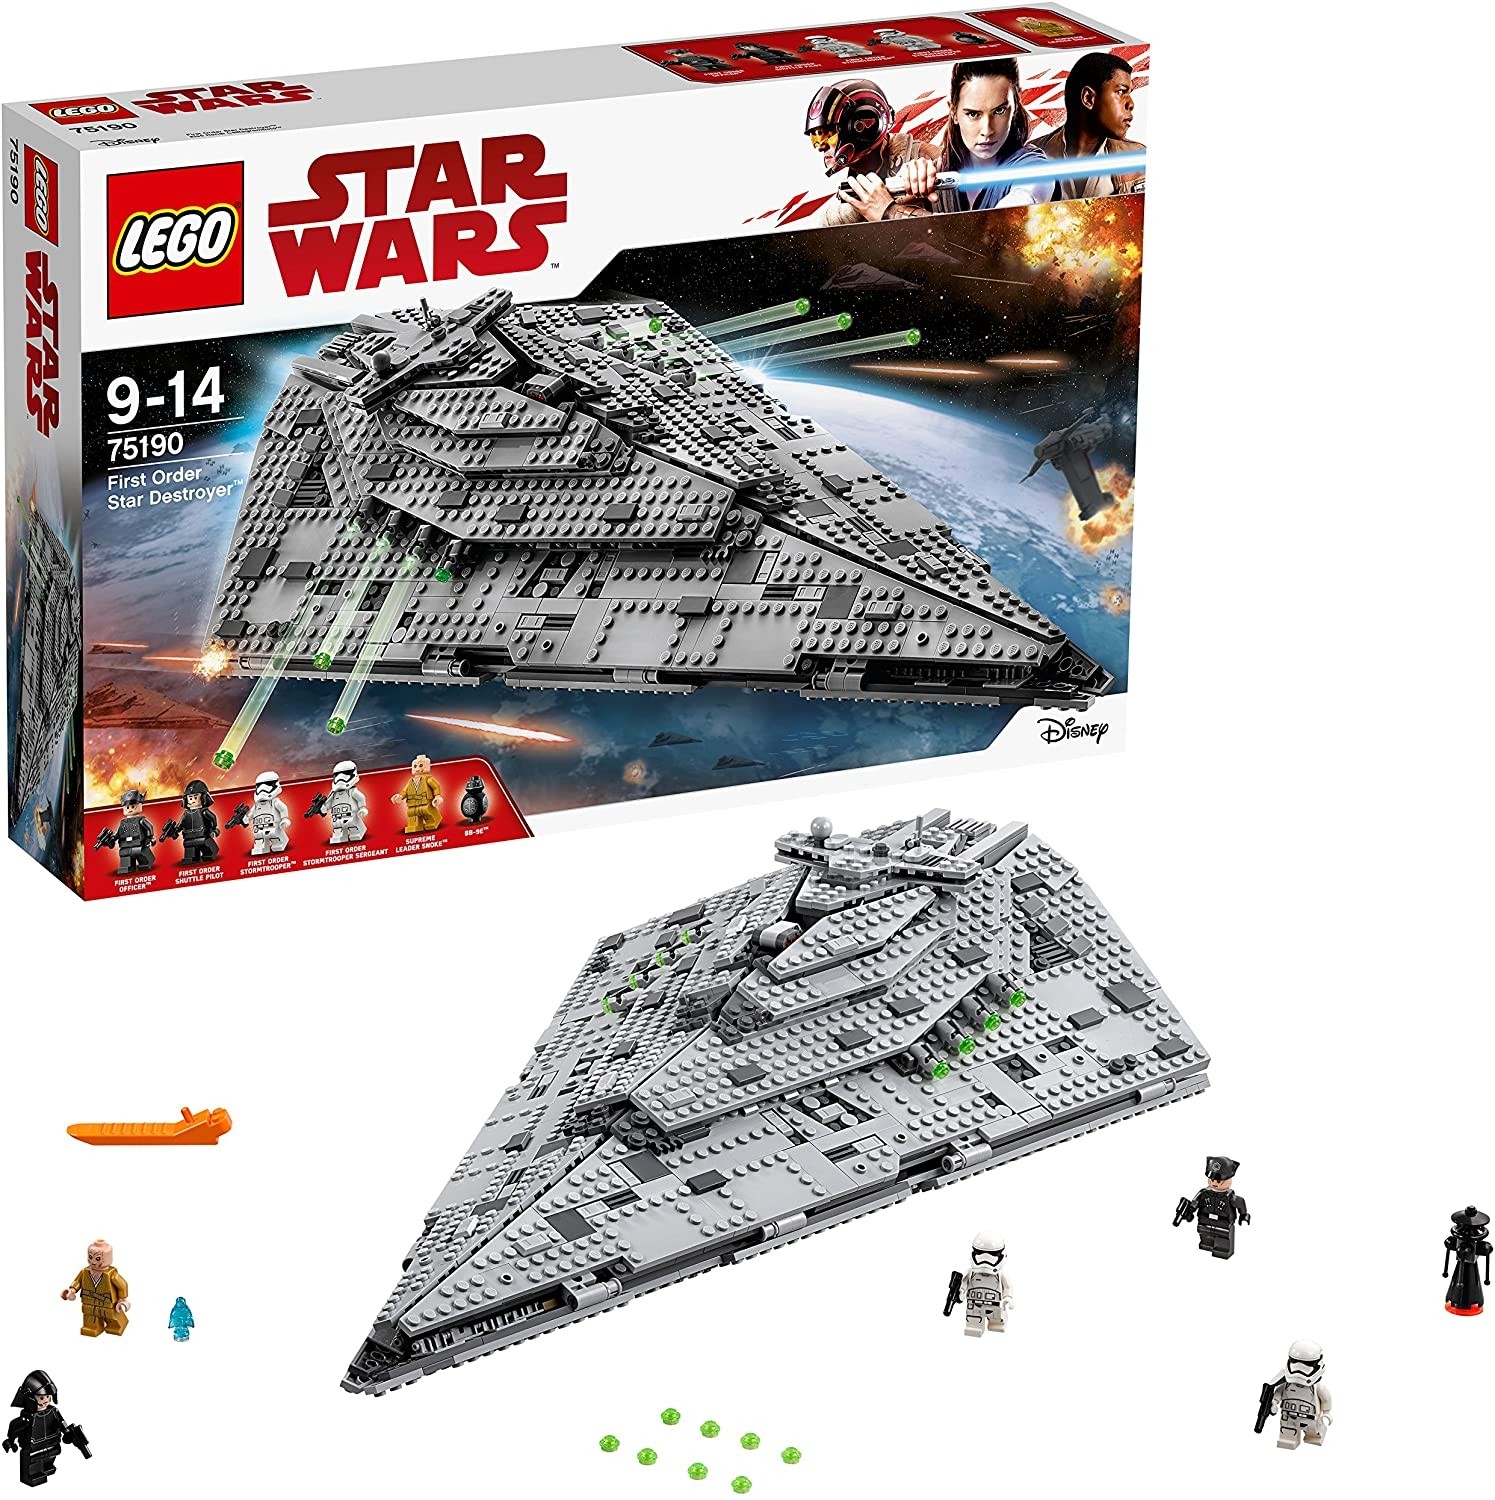  Lego Star Wars: First Order Star Destroyer (75190)